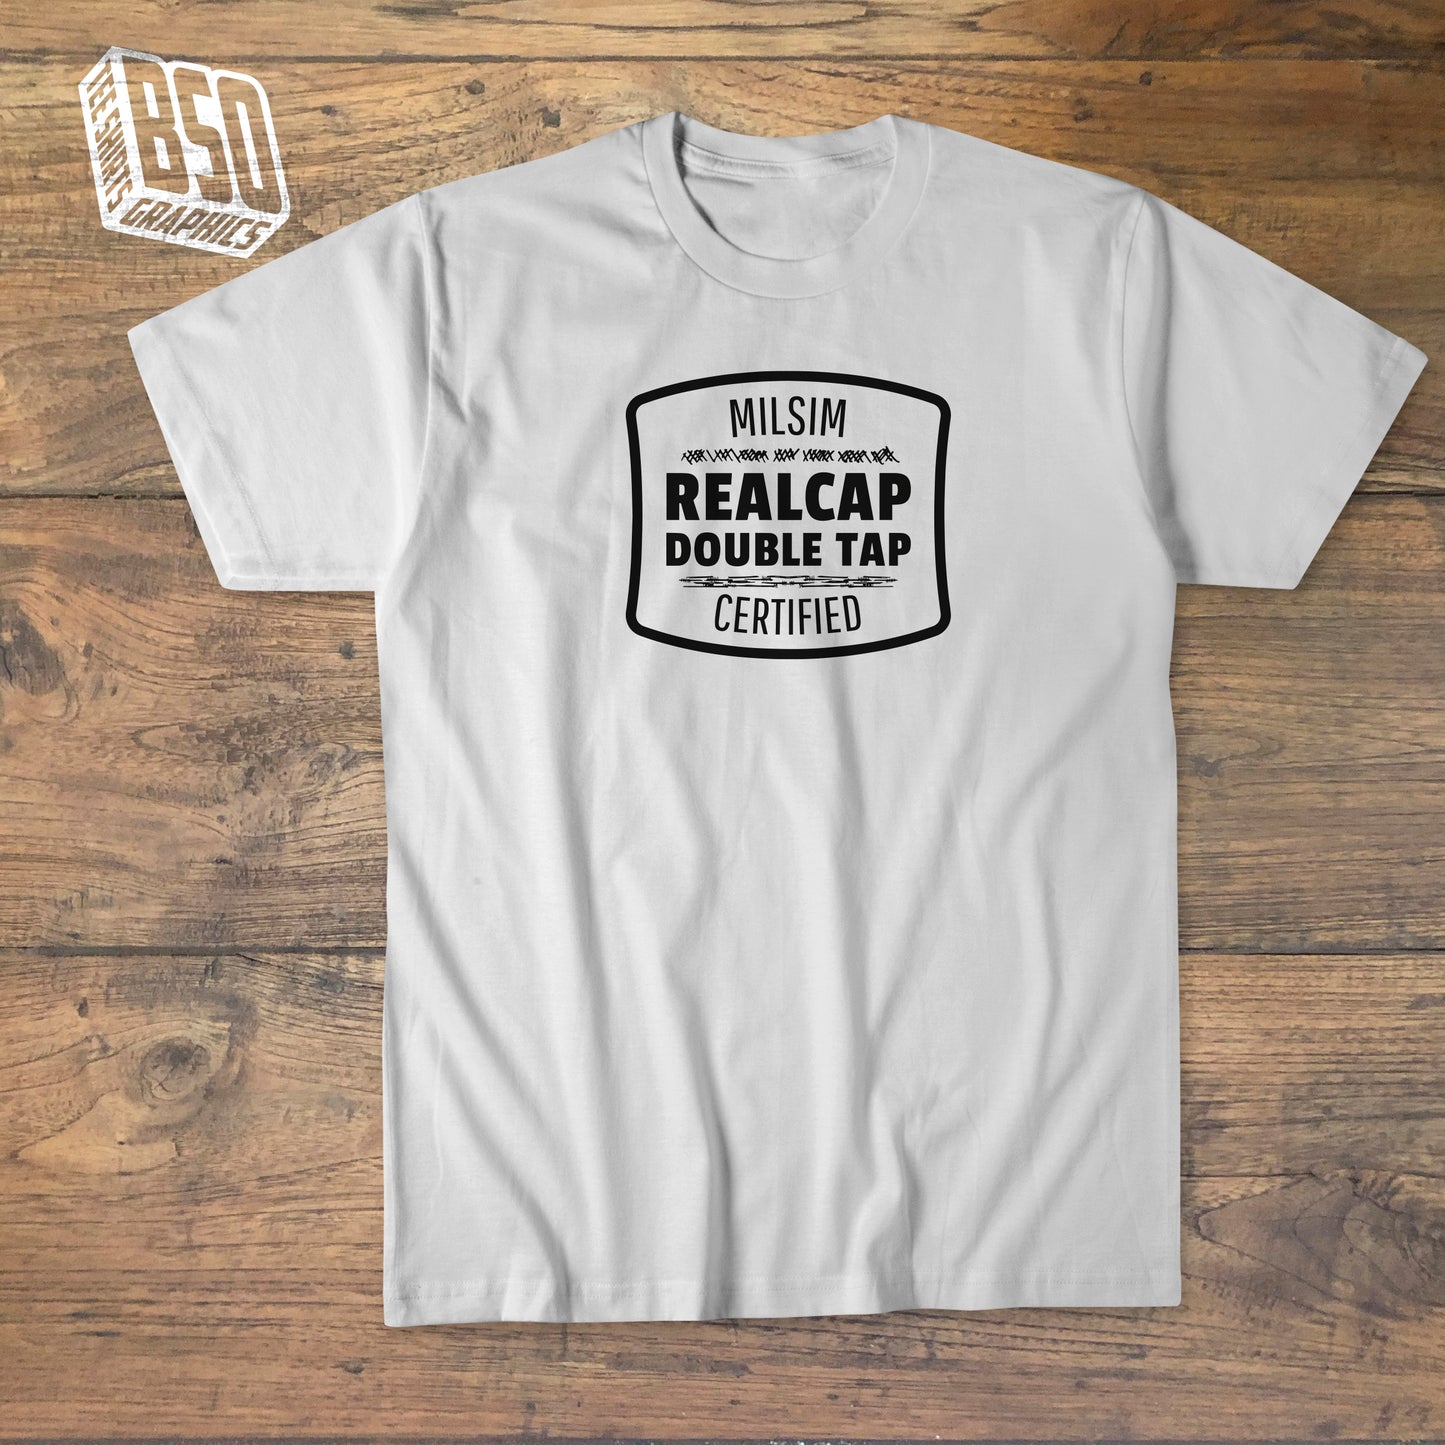 Tee-shirt MILSIM Certified "Realcap, Double Tap"